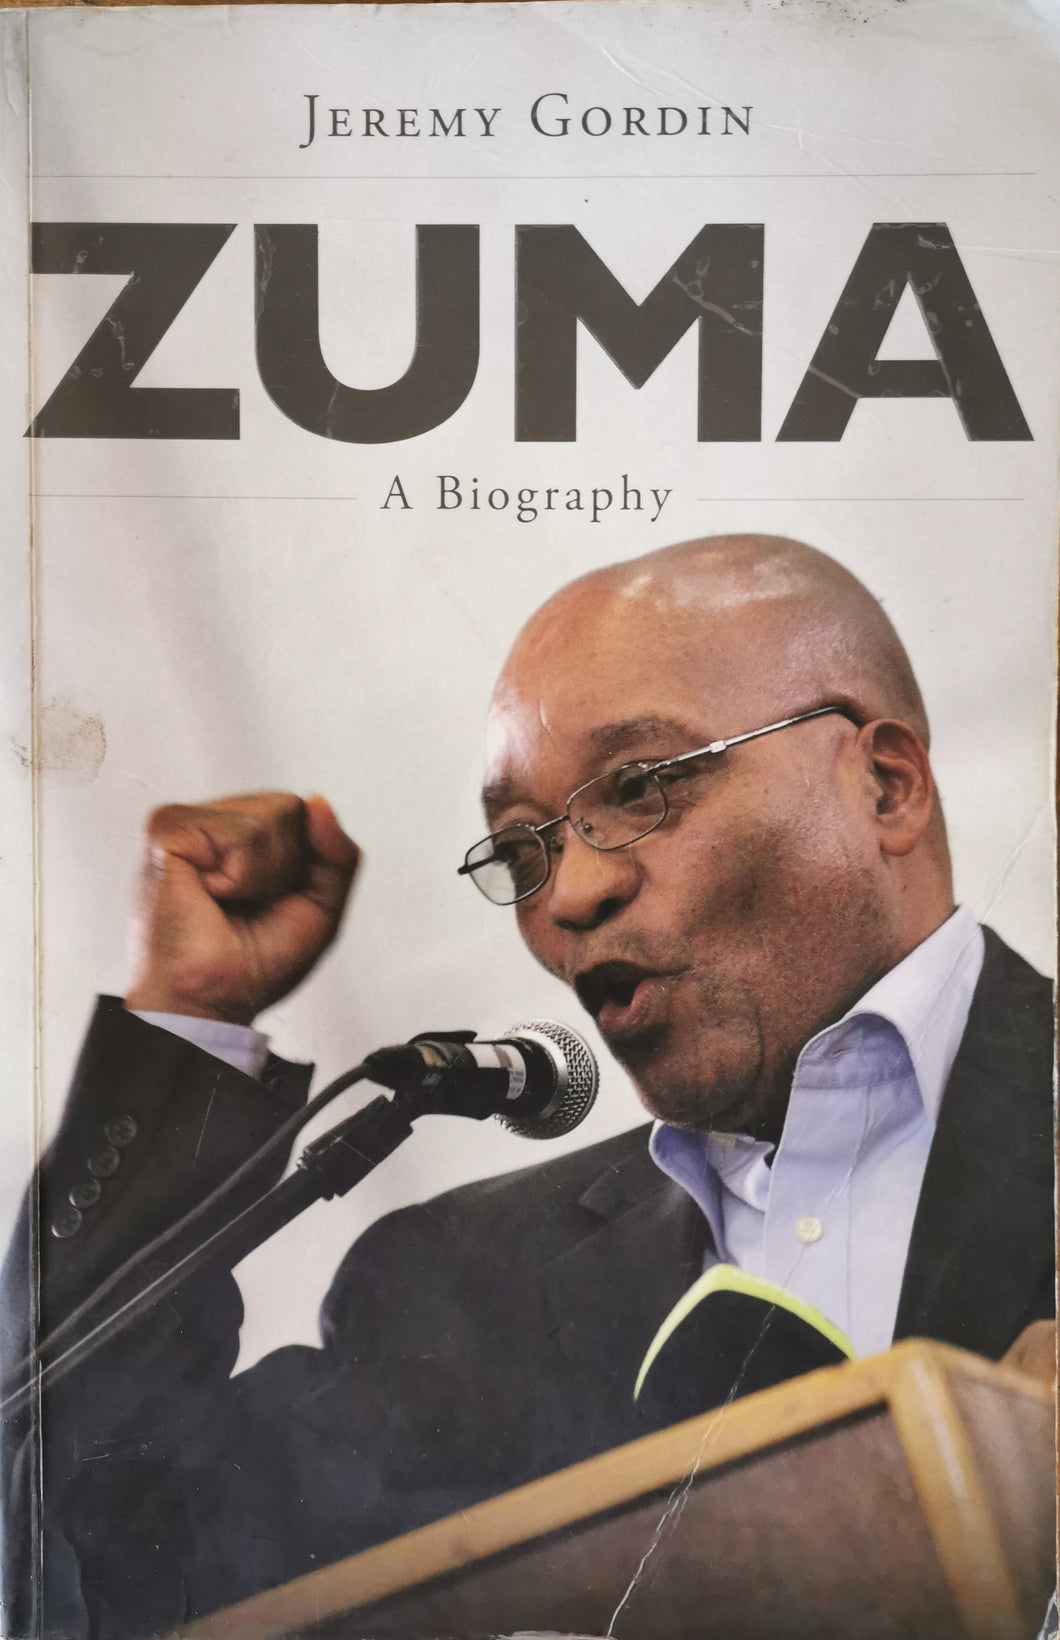 Zuma: A Biography by Jeremy Gordin